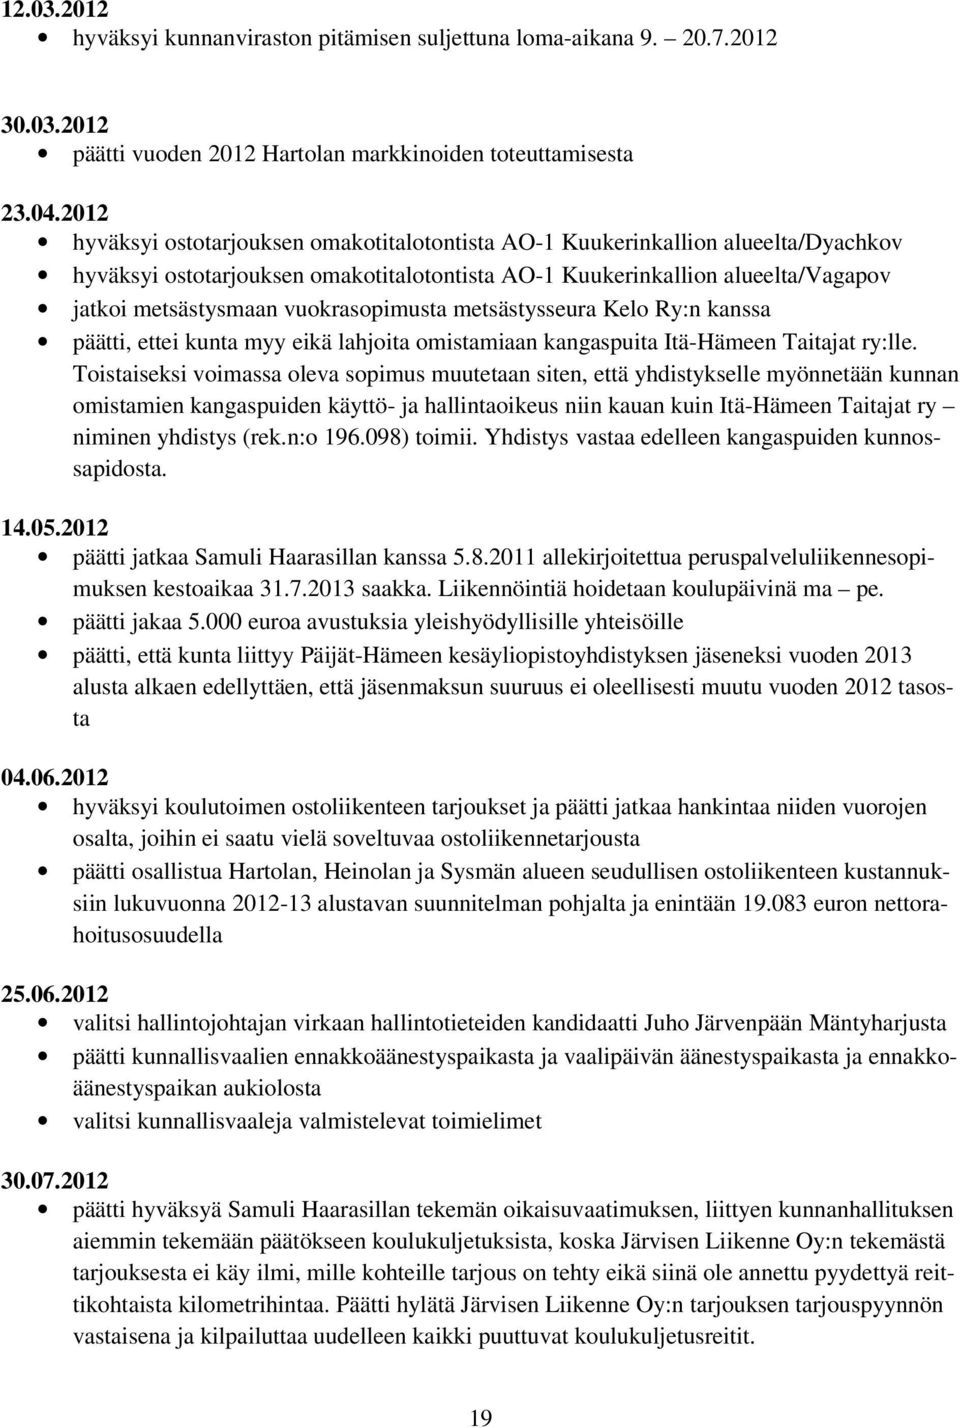 vuokrasopimusta metsästysseura Kelo Ry:n kanssa päätti, ettei kunta myy eikä lahjoita omistamiaan kangaspuita Itä-Hämeen Taitajat ry:lle.